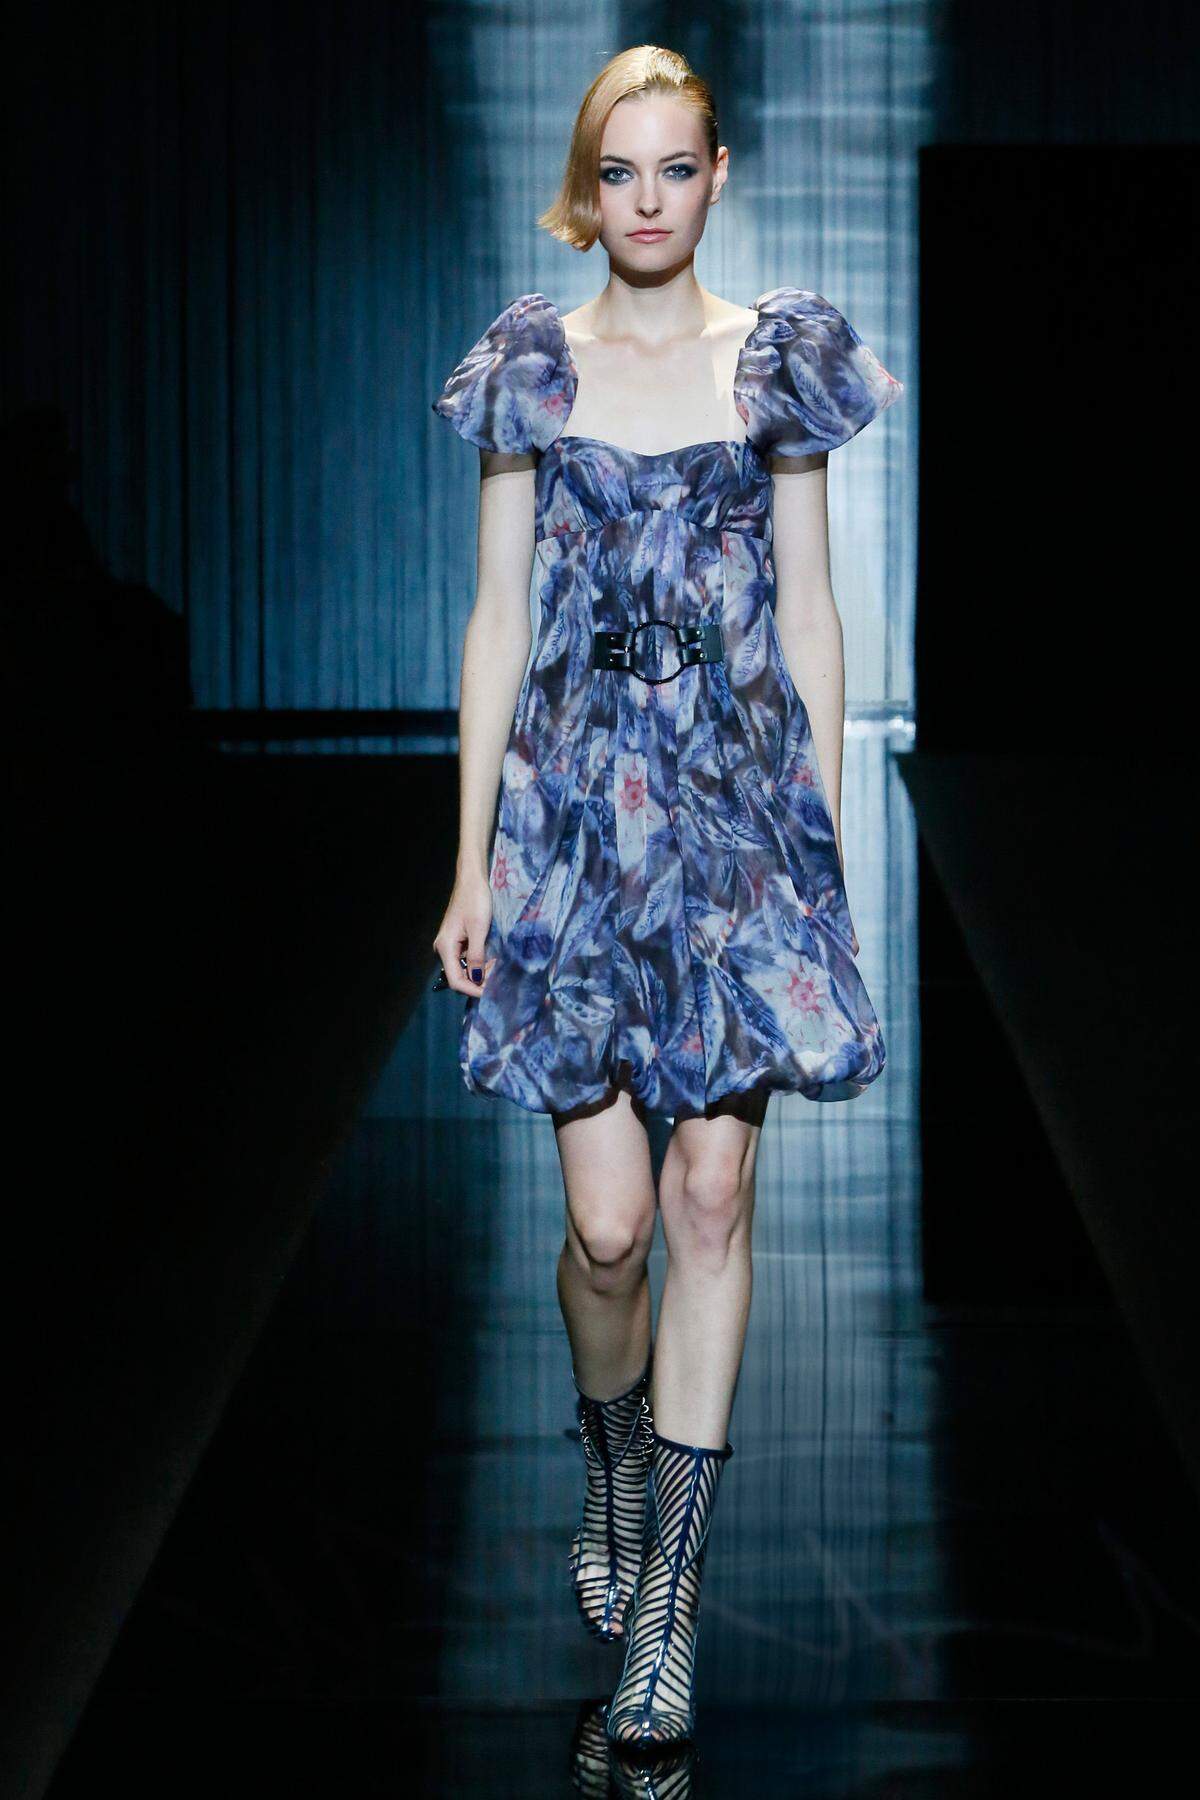 Seidenkleider im Empirestil mit Puffärmel - so setzt Giorgio Armani den Trend um.